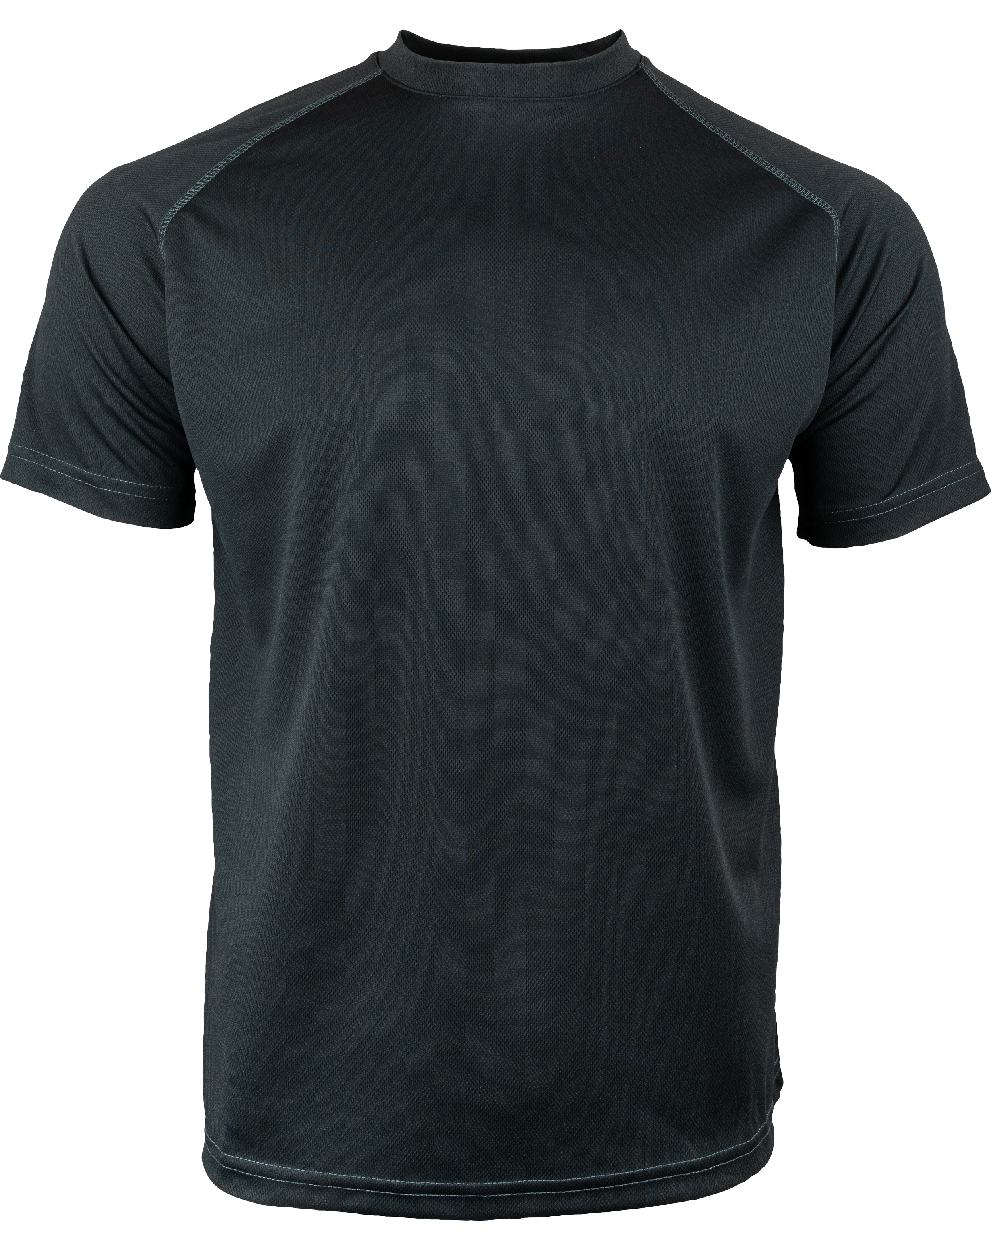 Viper Mesh-Tech T-Shirt in Black 